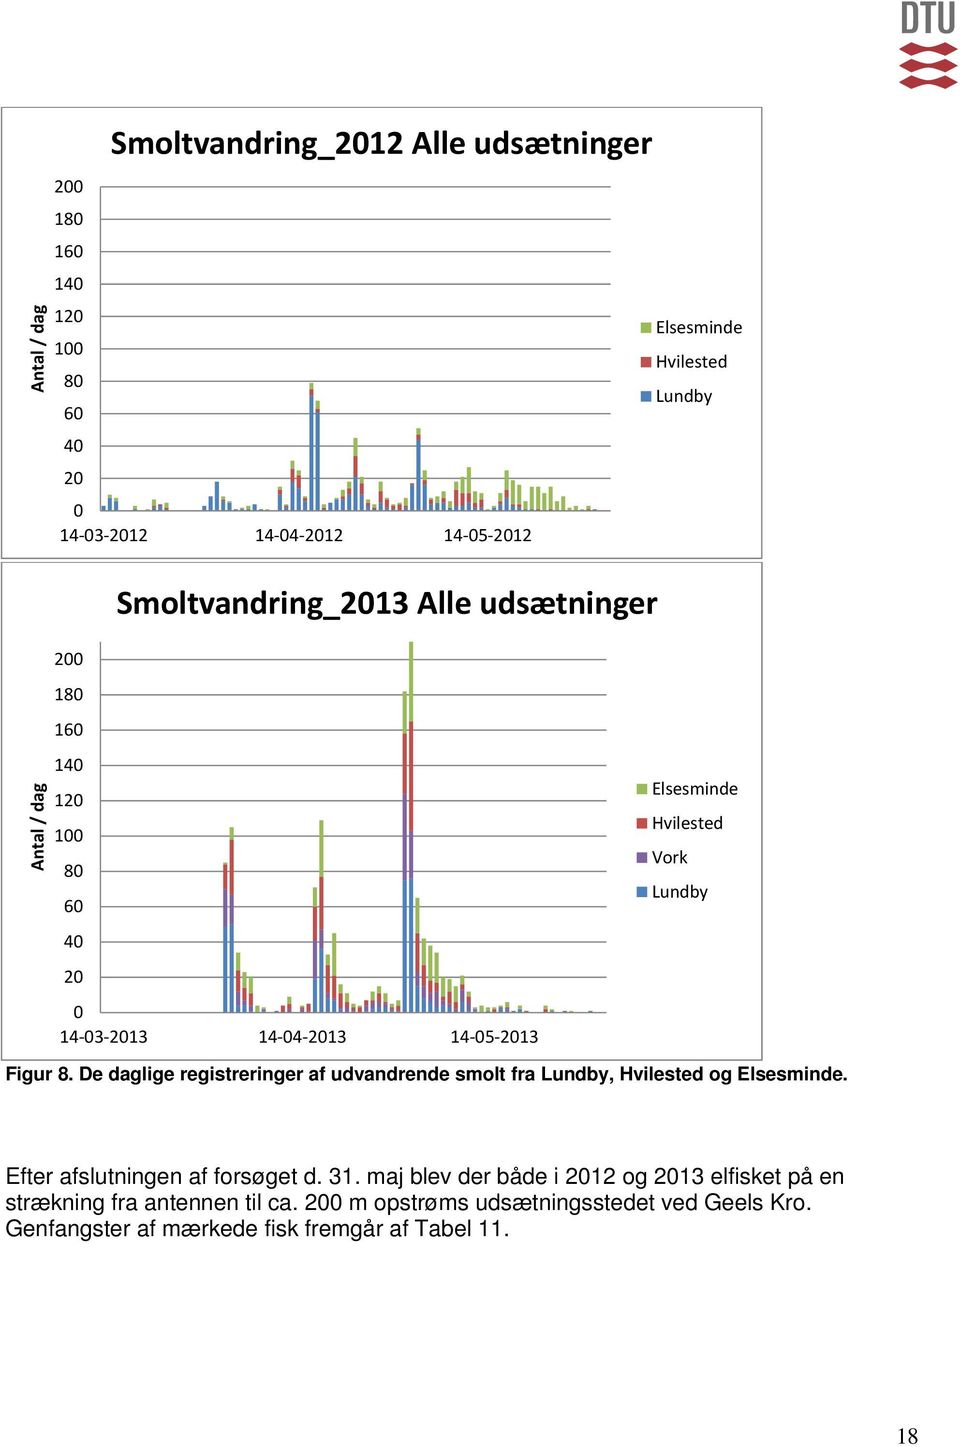 De daglige registreringer af udvandrende smolt fra Lundby, Hvilested og Elsesminde. Efter afslutningen af forsøget d. 31.